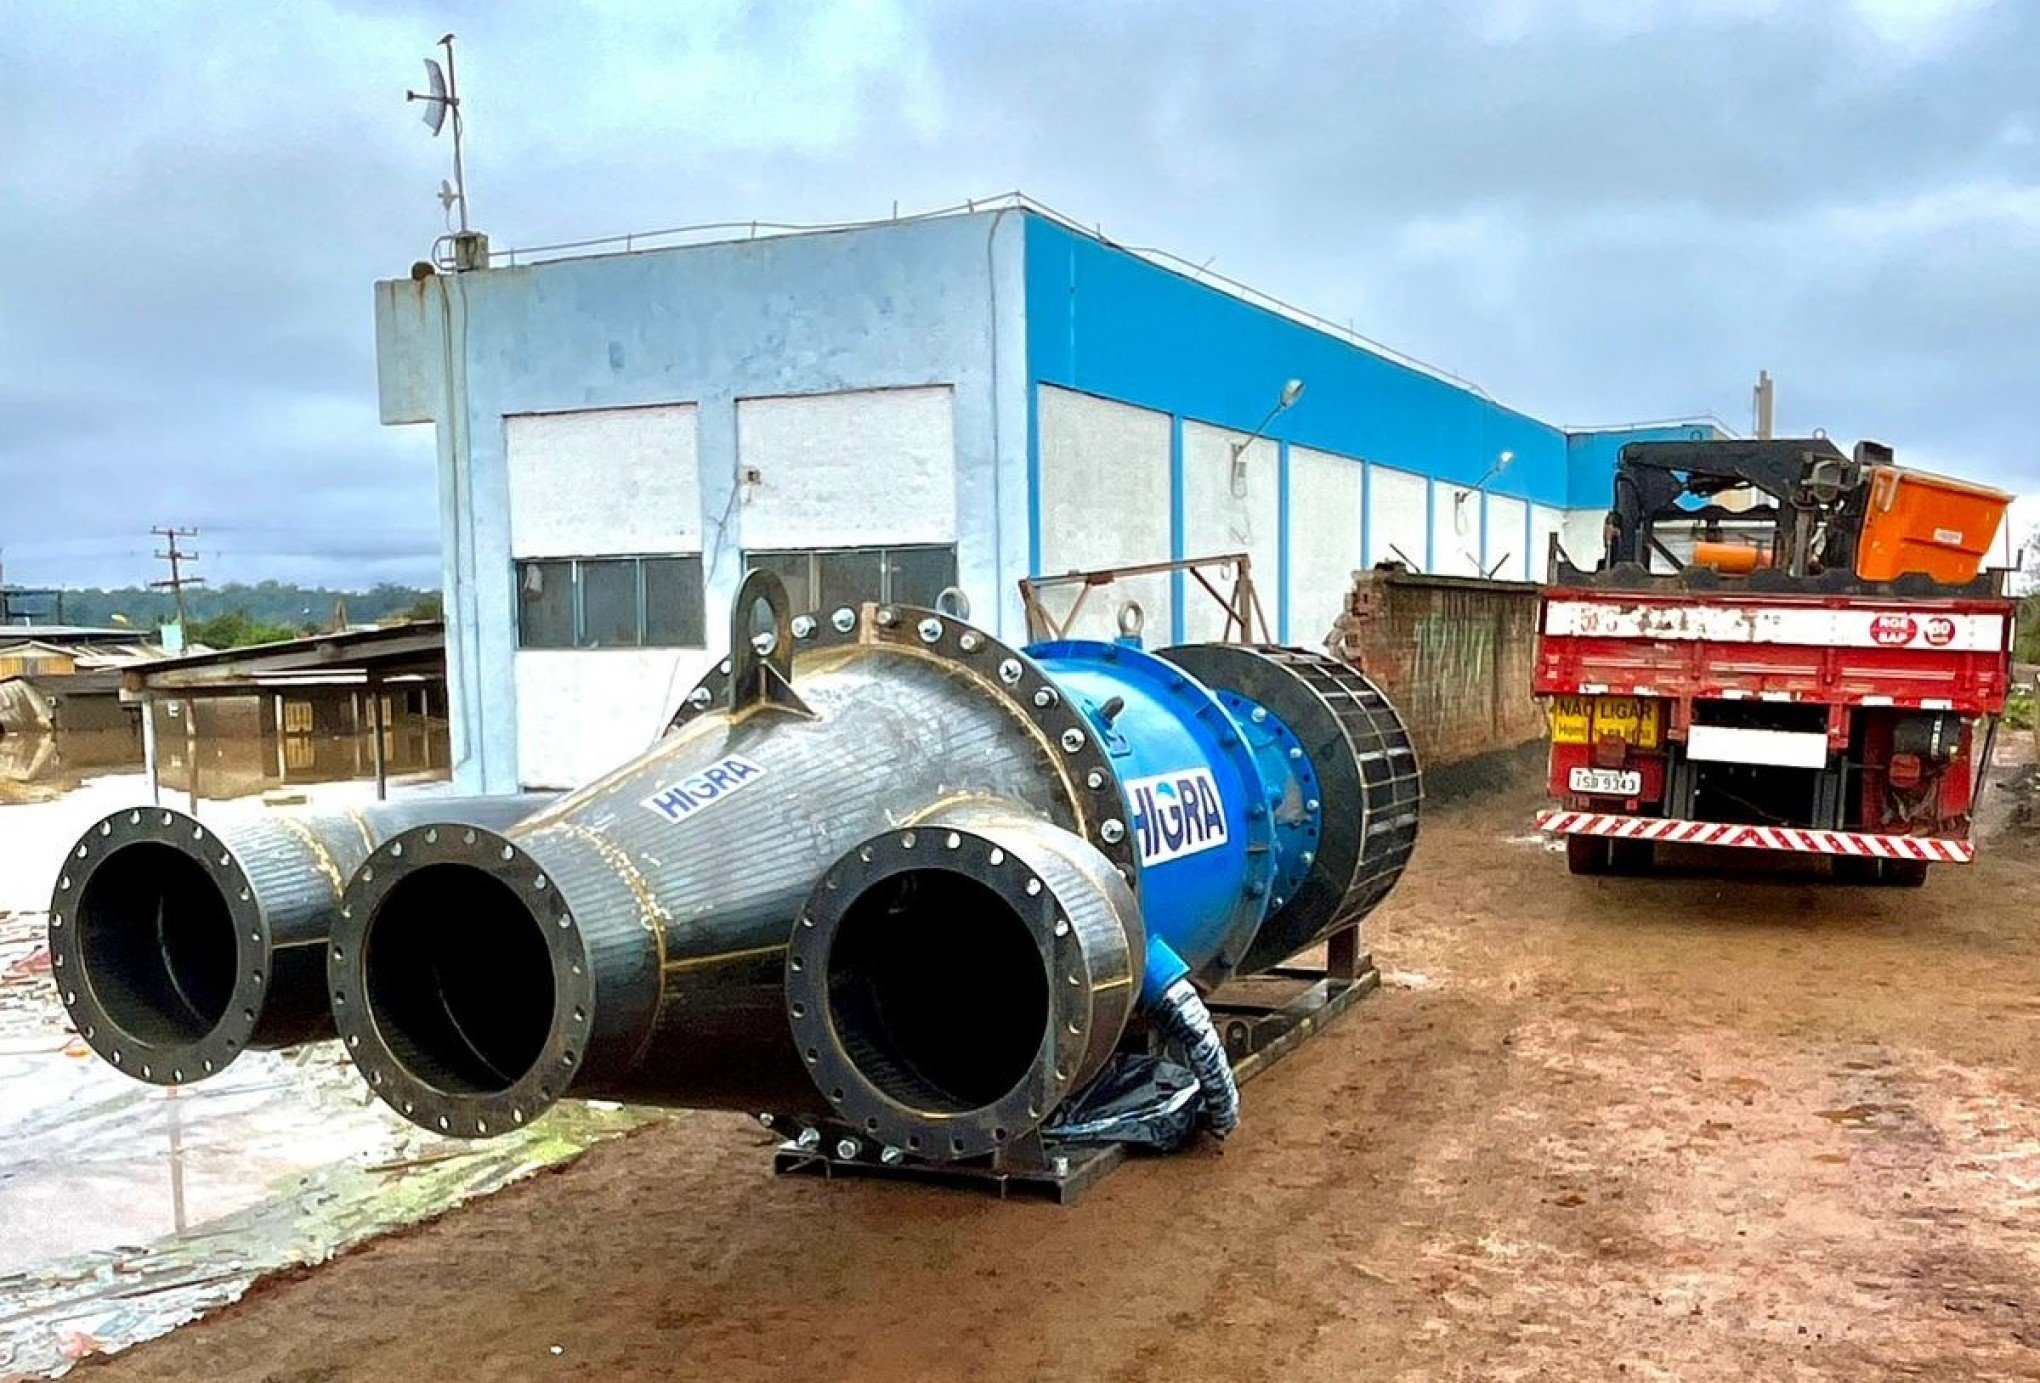 Bombas móveis já drenaram mais de 10 bilhões de litros de água dos bairros de São Leopoldo